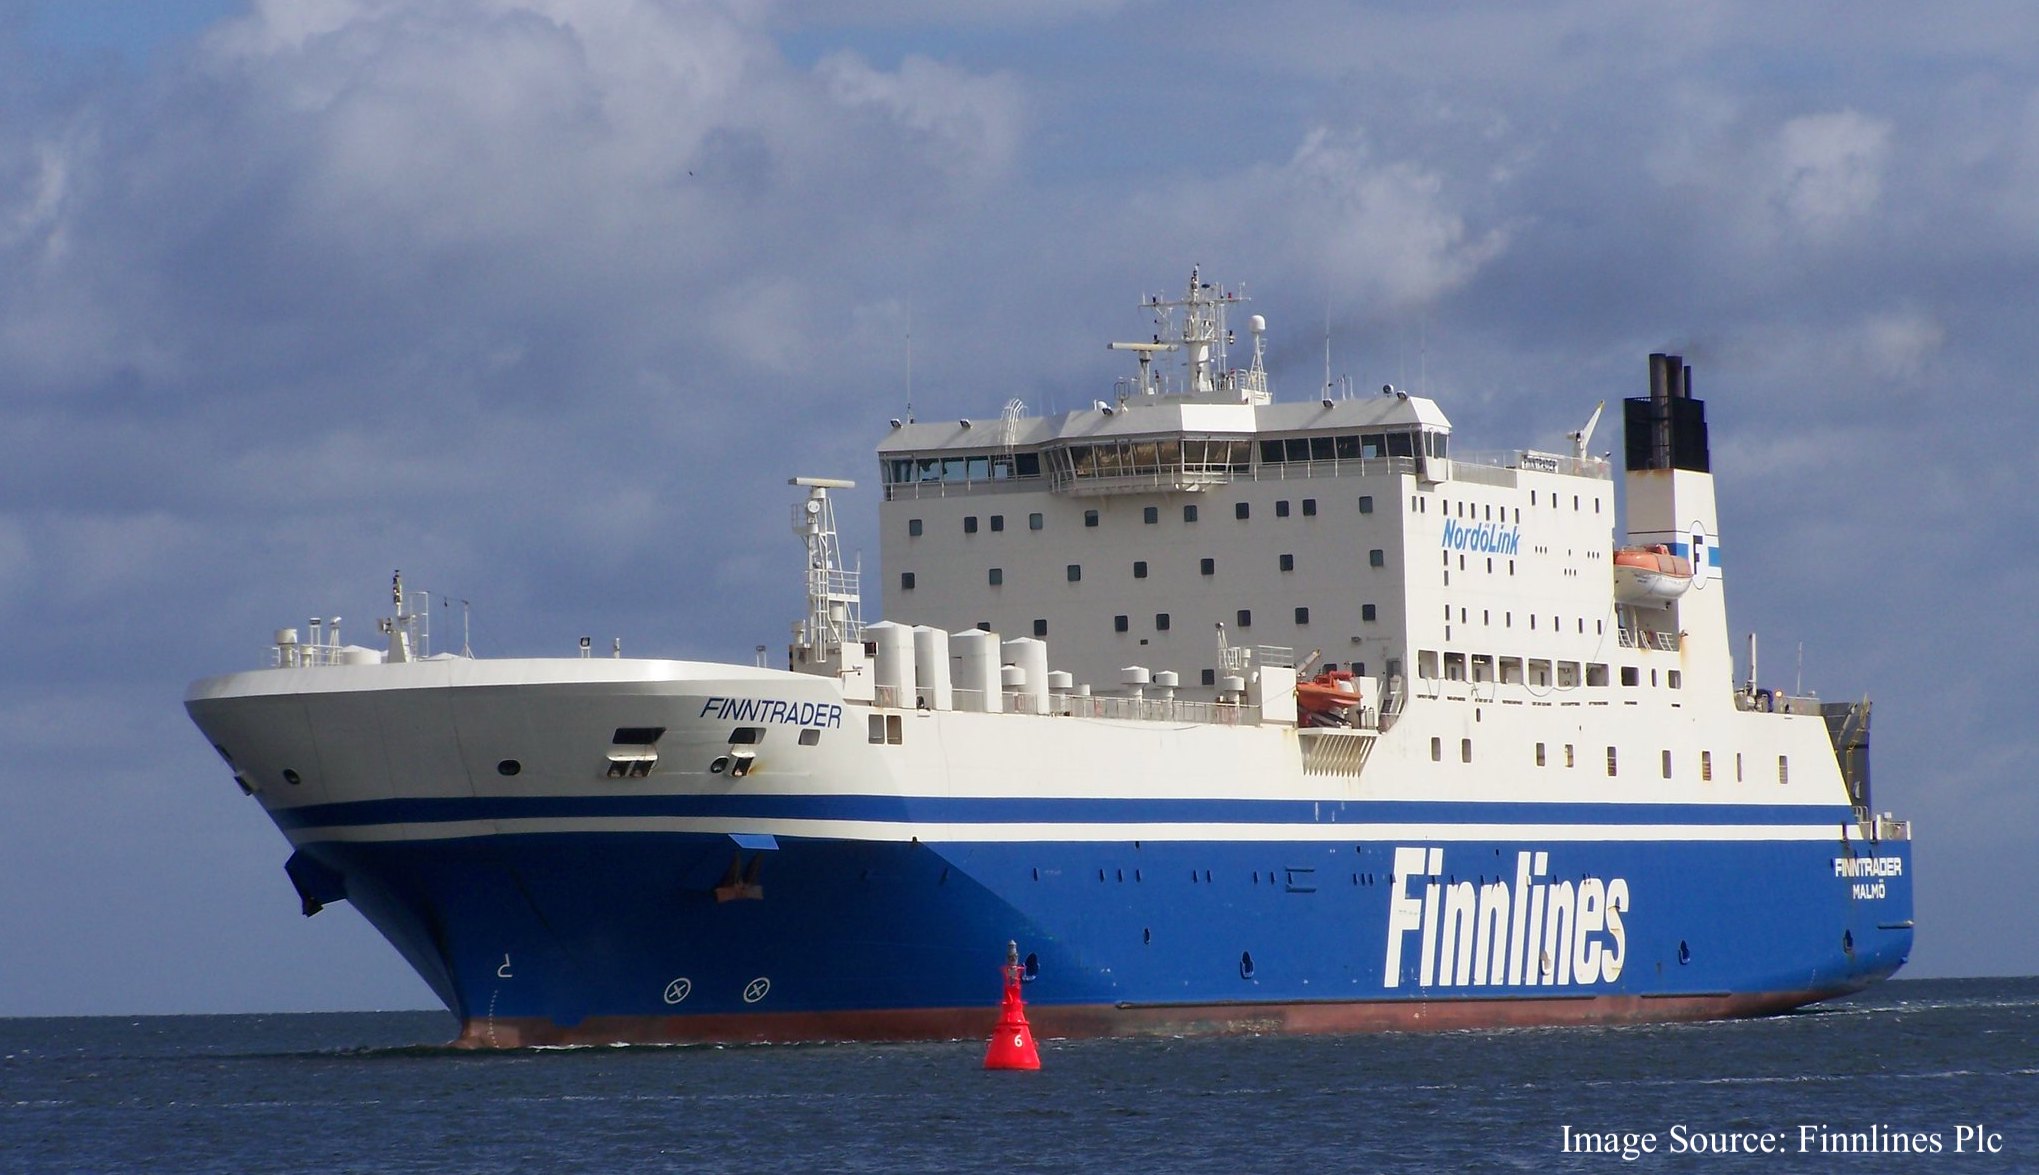 Photo of Finnlines - Finntrader ship